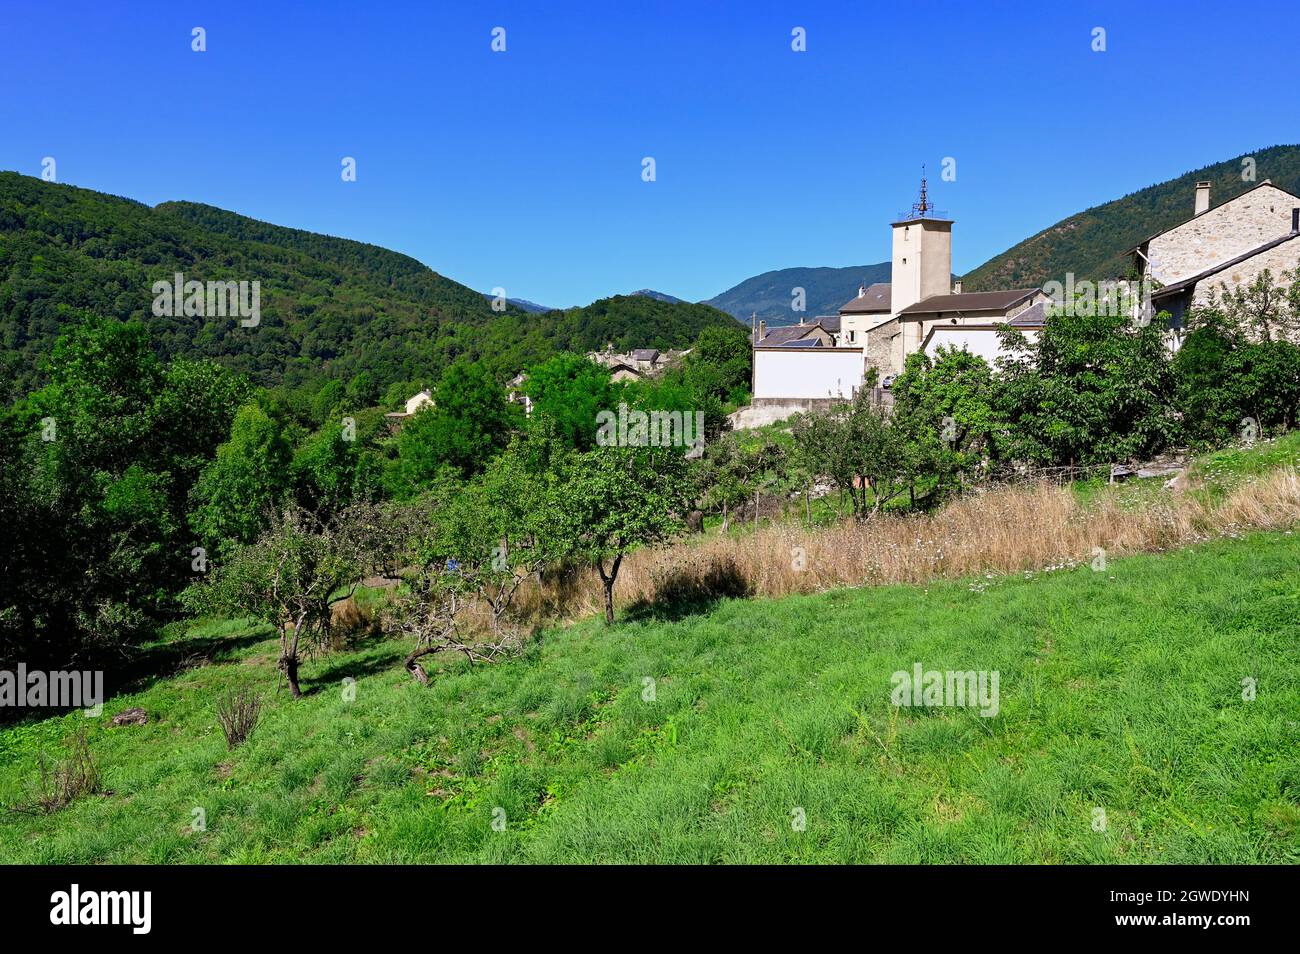 Il piccolo villaggio di montagna di Coulozouls era una volta una comunità libera. Oggi, è un luogo popolare per escursioni nei Pirenei francesi. Foto Stock